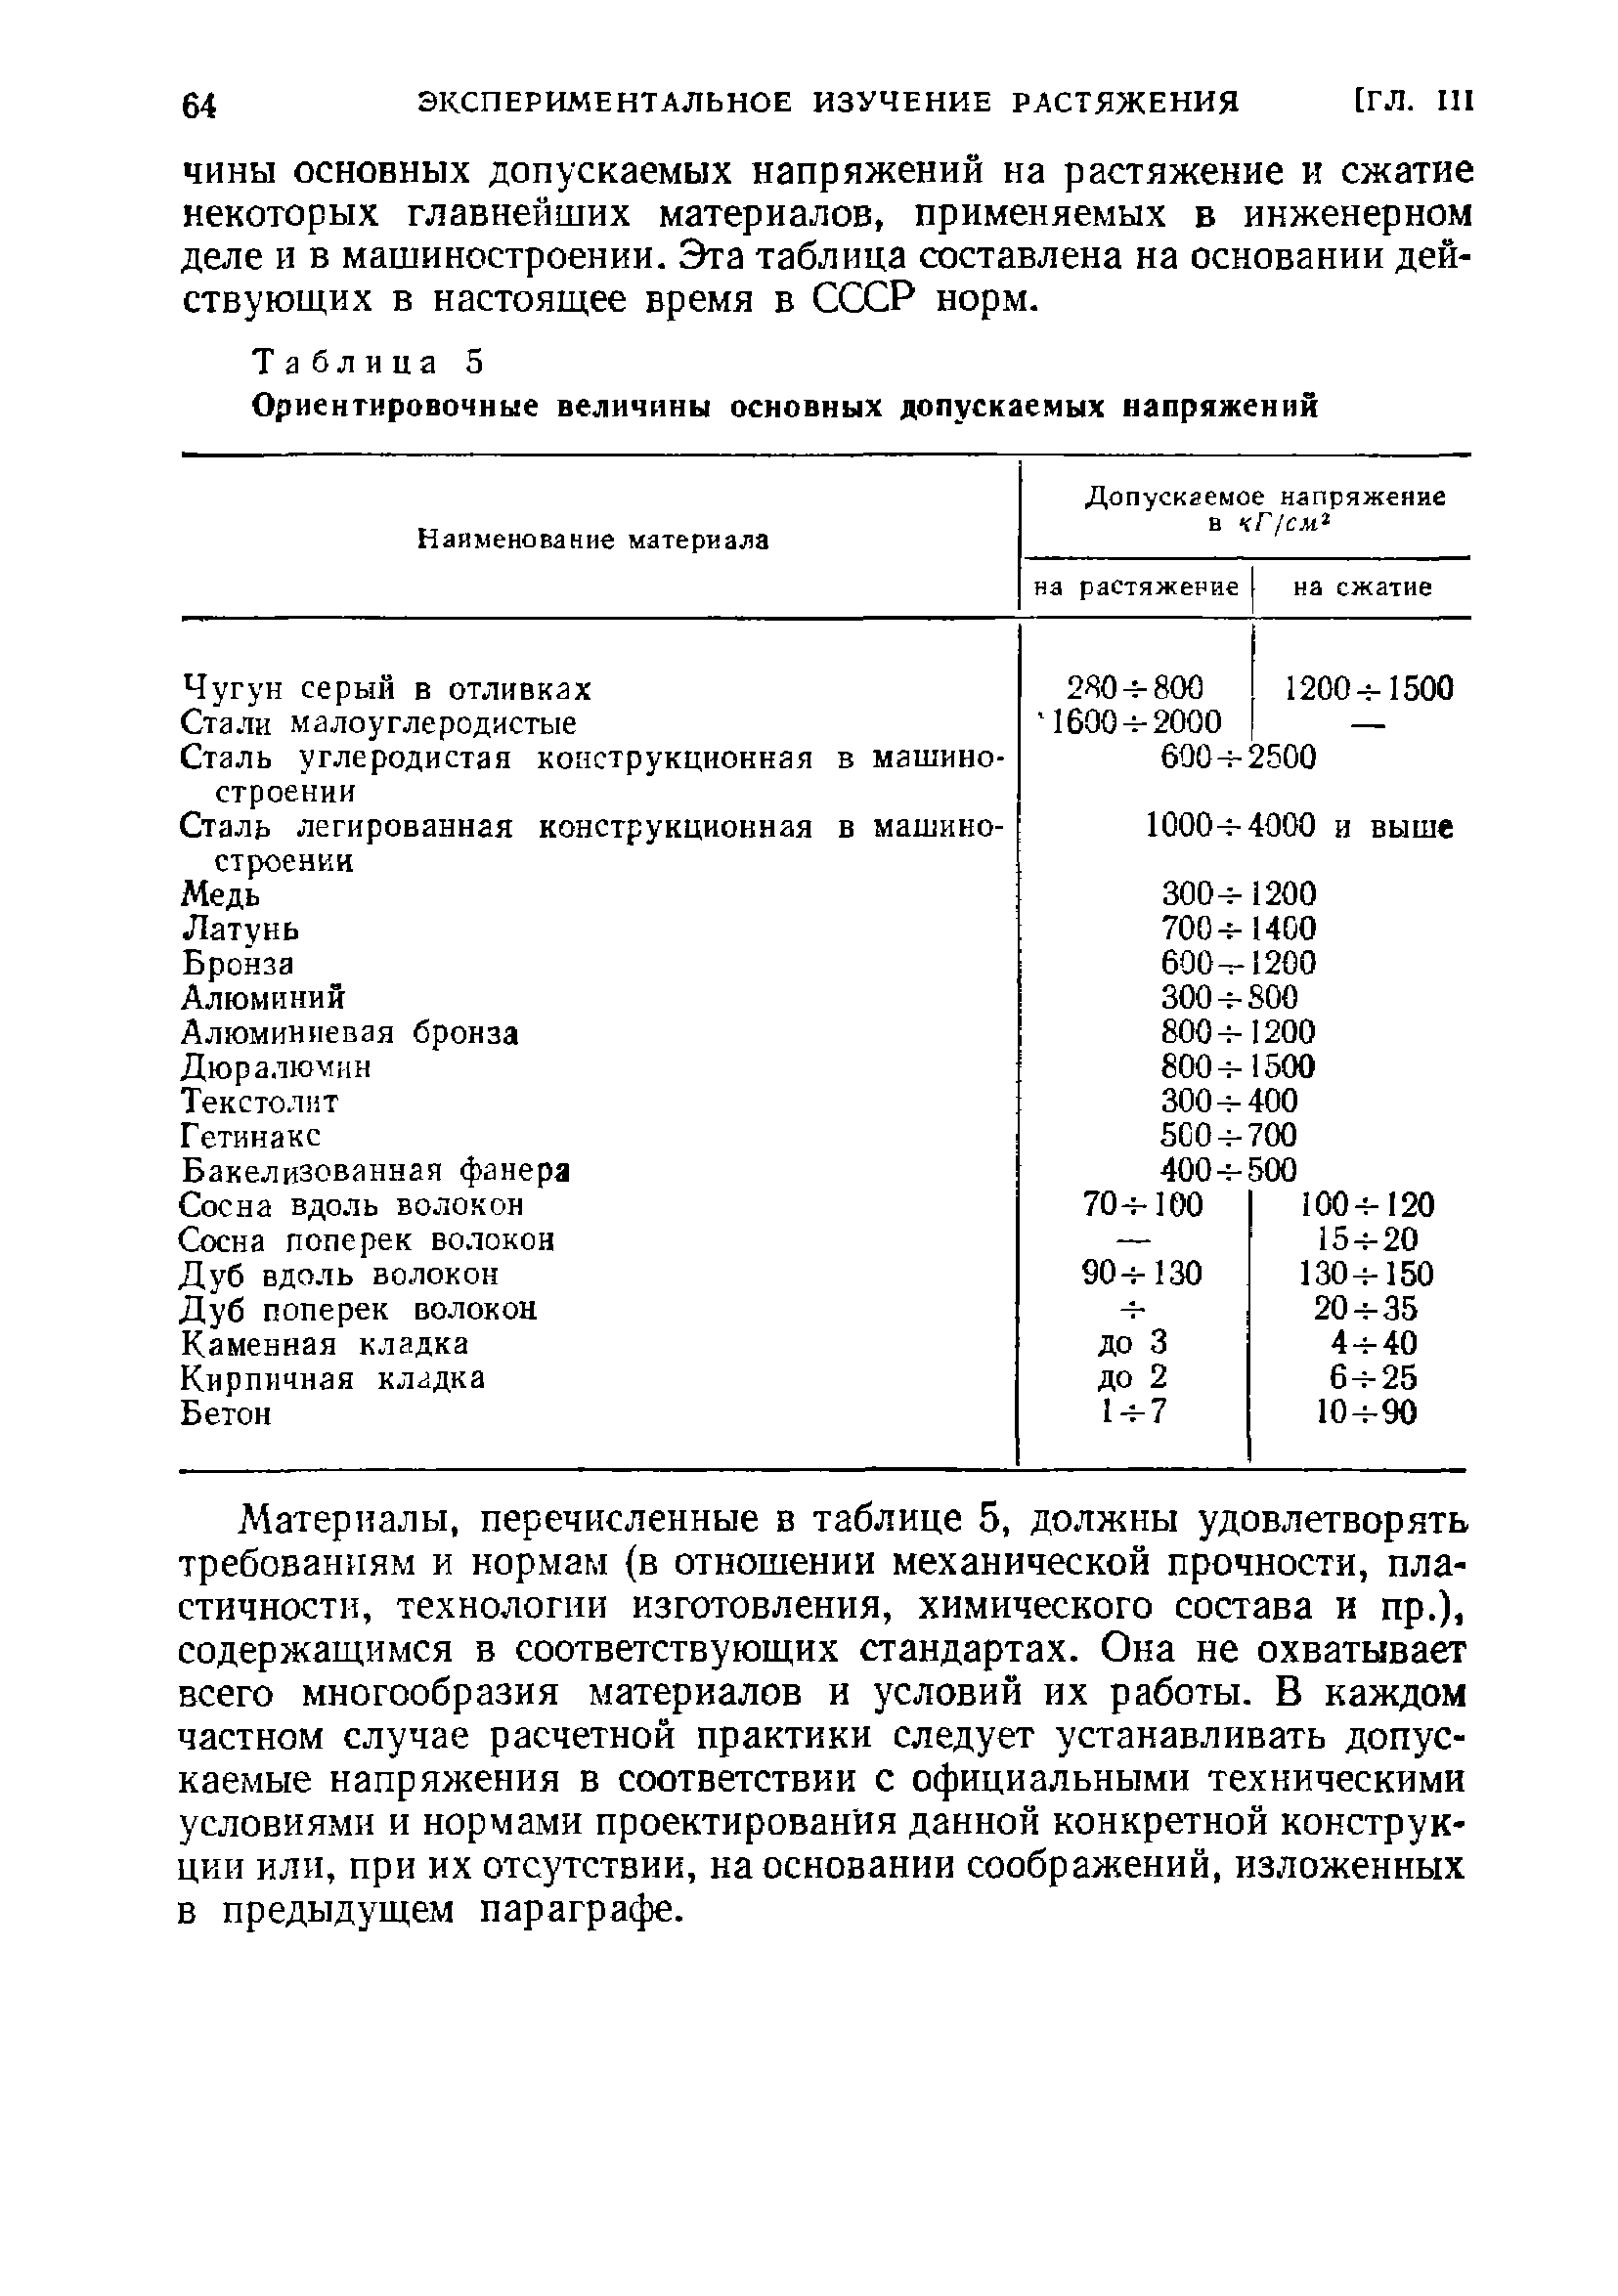 ЧИНЫ ОСНОВНЫХ допускаемых напряжений на растяжение и сжатие некоторых главнейших материалов, применяемых в инженерном деле и в машиностроении. Эта таблица составлена на основании действующих в настоящее время в СССР норм.
